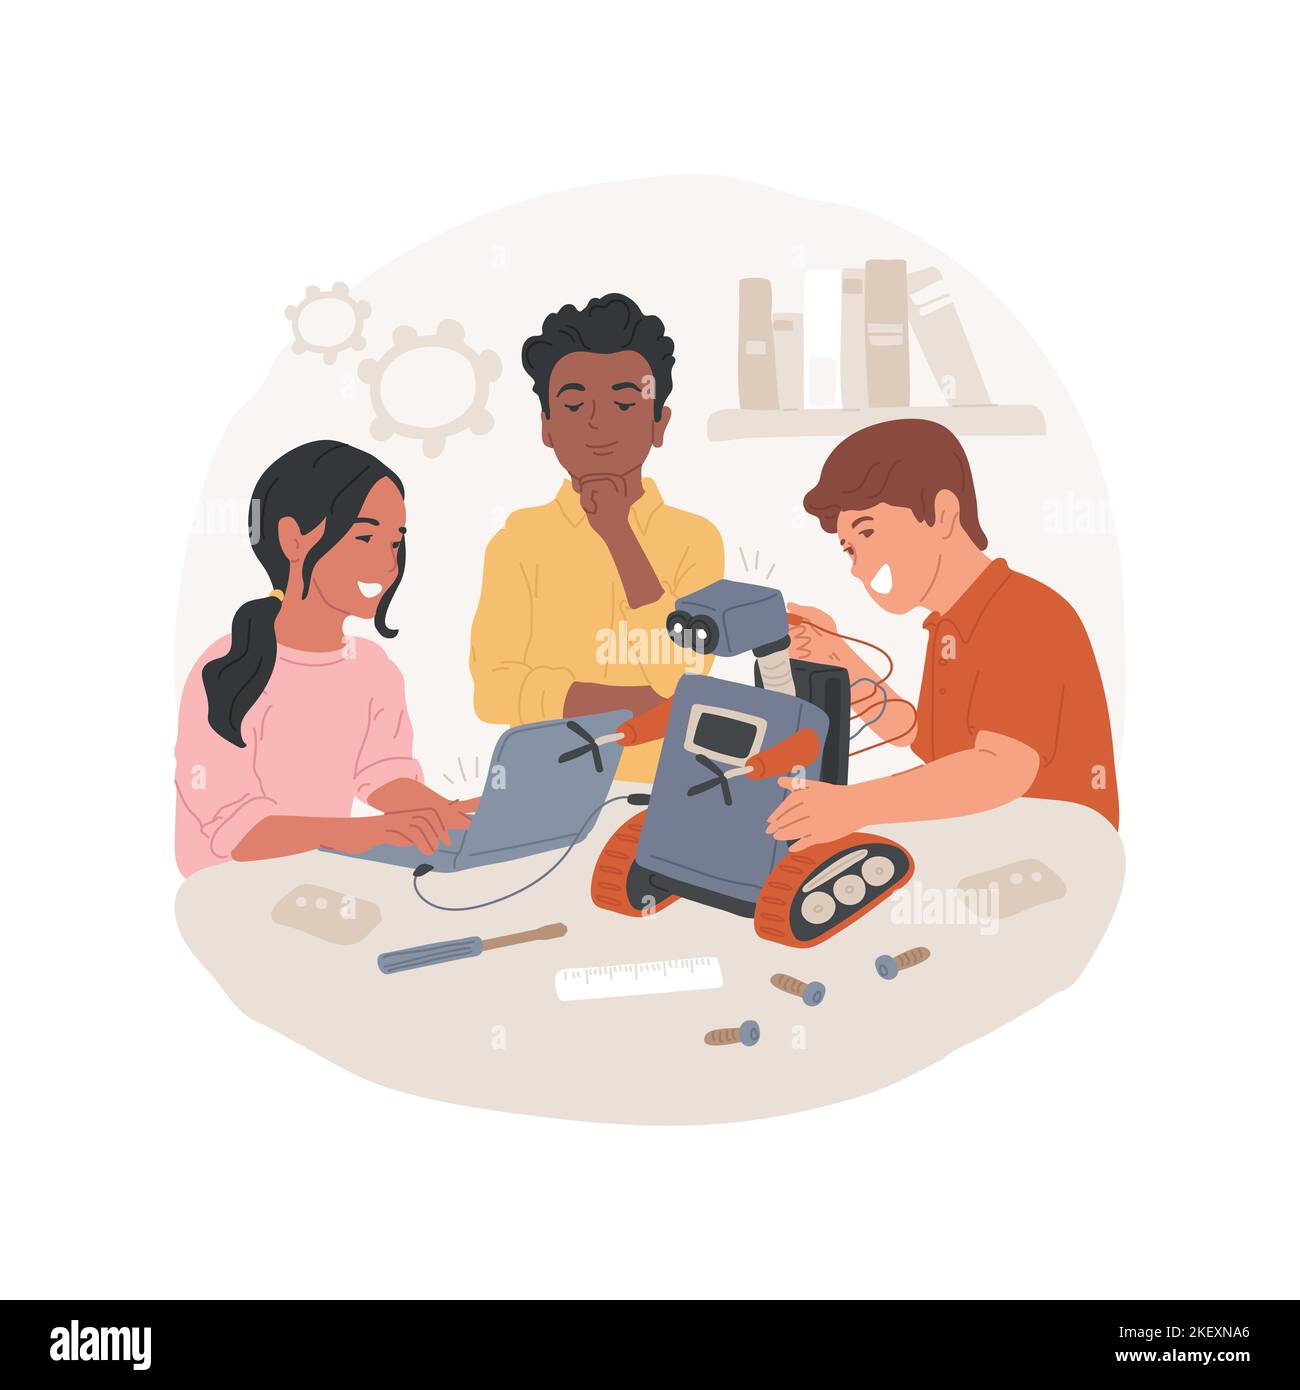 El club de robótica aisló la ilustración de vectores de dibujos animados.  Grupo de jóvenes adolescentes haciendo robot, actividad tecnológica de la  escuela media, club de estudiantes de robótica, proyecto de ingeniería,